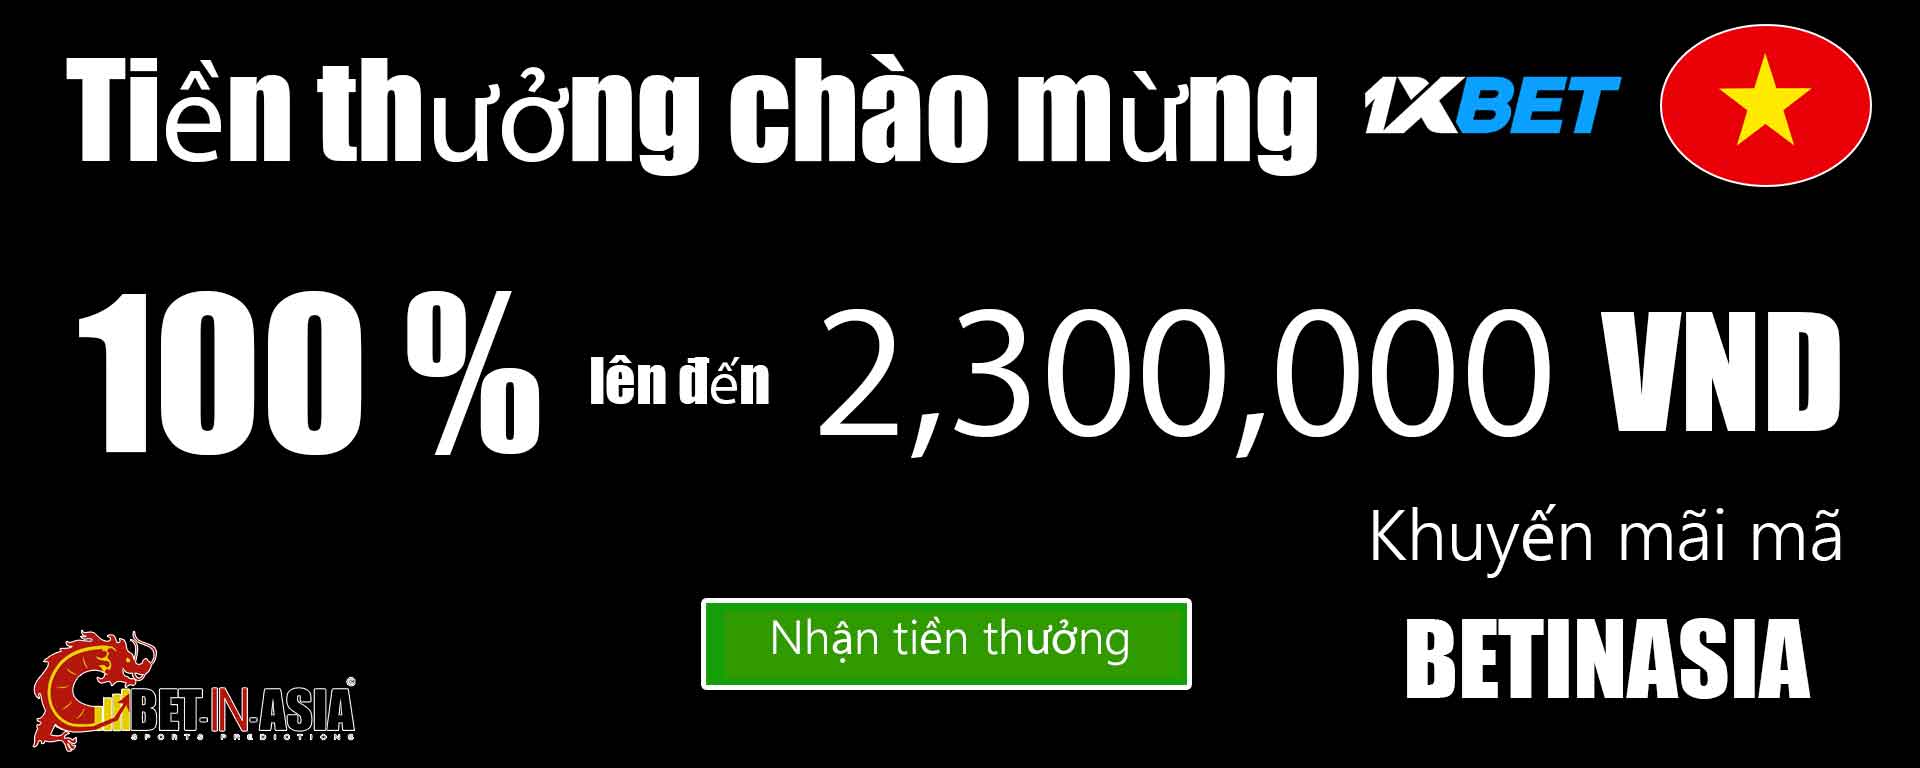 Tiền thưởng chào mừng 1xbet Việt Nam 100% khi gửi tiền đầu tiên